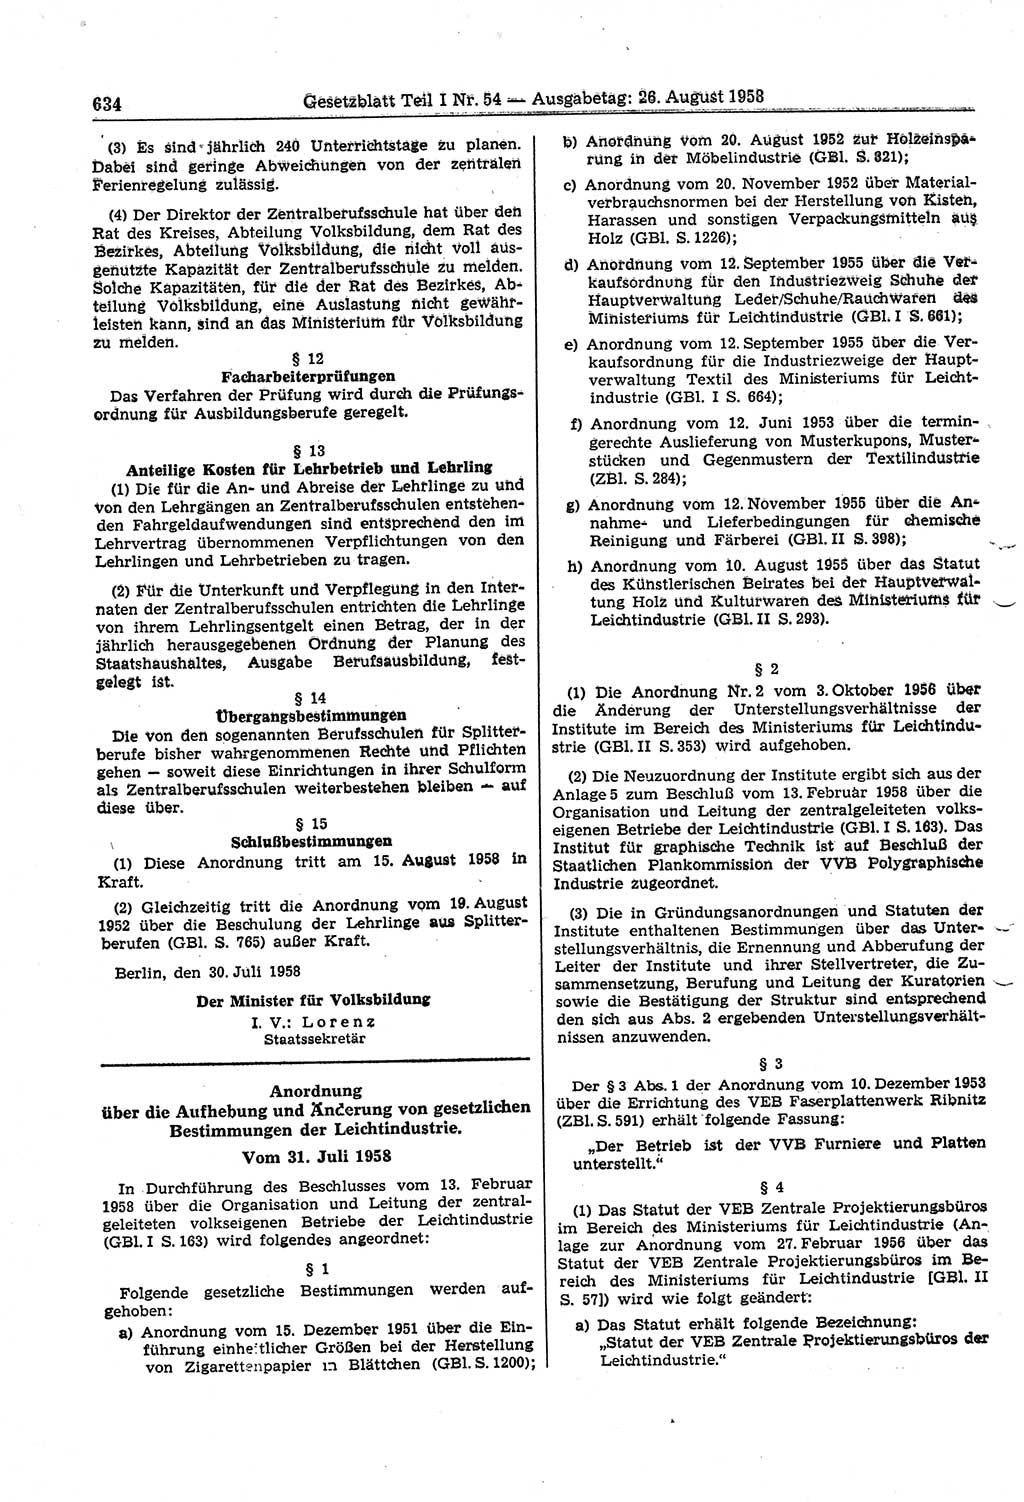 Gesetzblatt (GBl.) der Deutschen Demokratischen Republik (DDR) Teil Ⅰ 1958, Seite 634 (GBl. DDR Ⅰ 1958, S. 634)